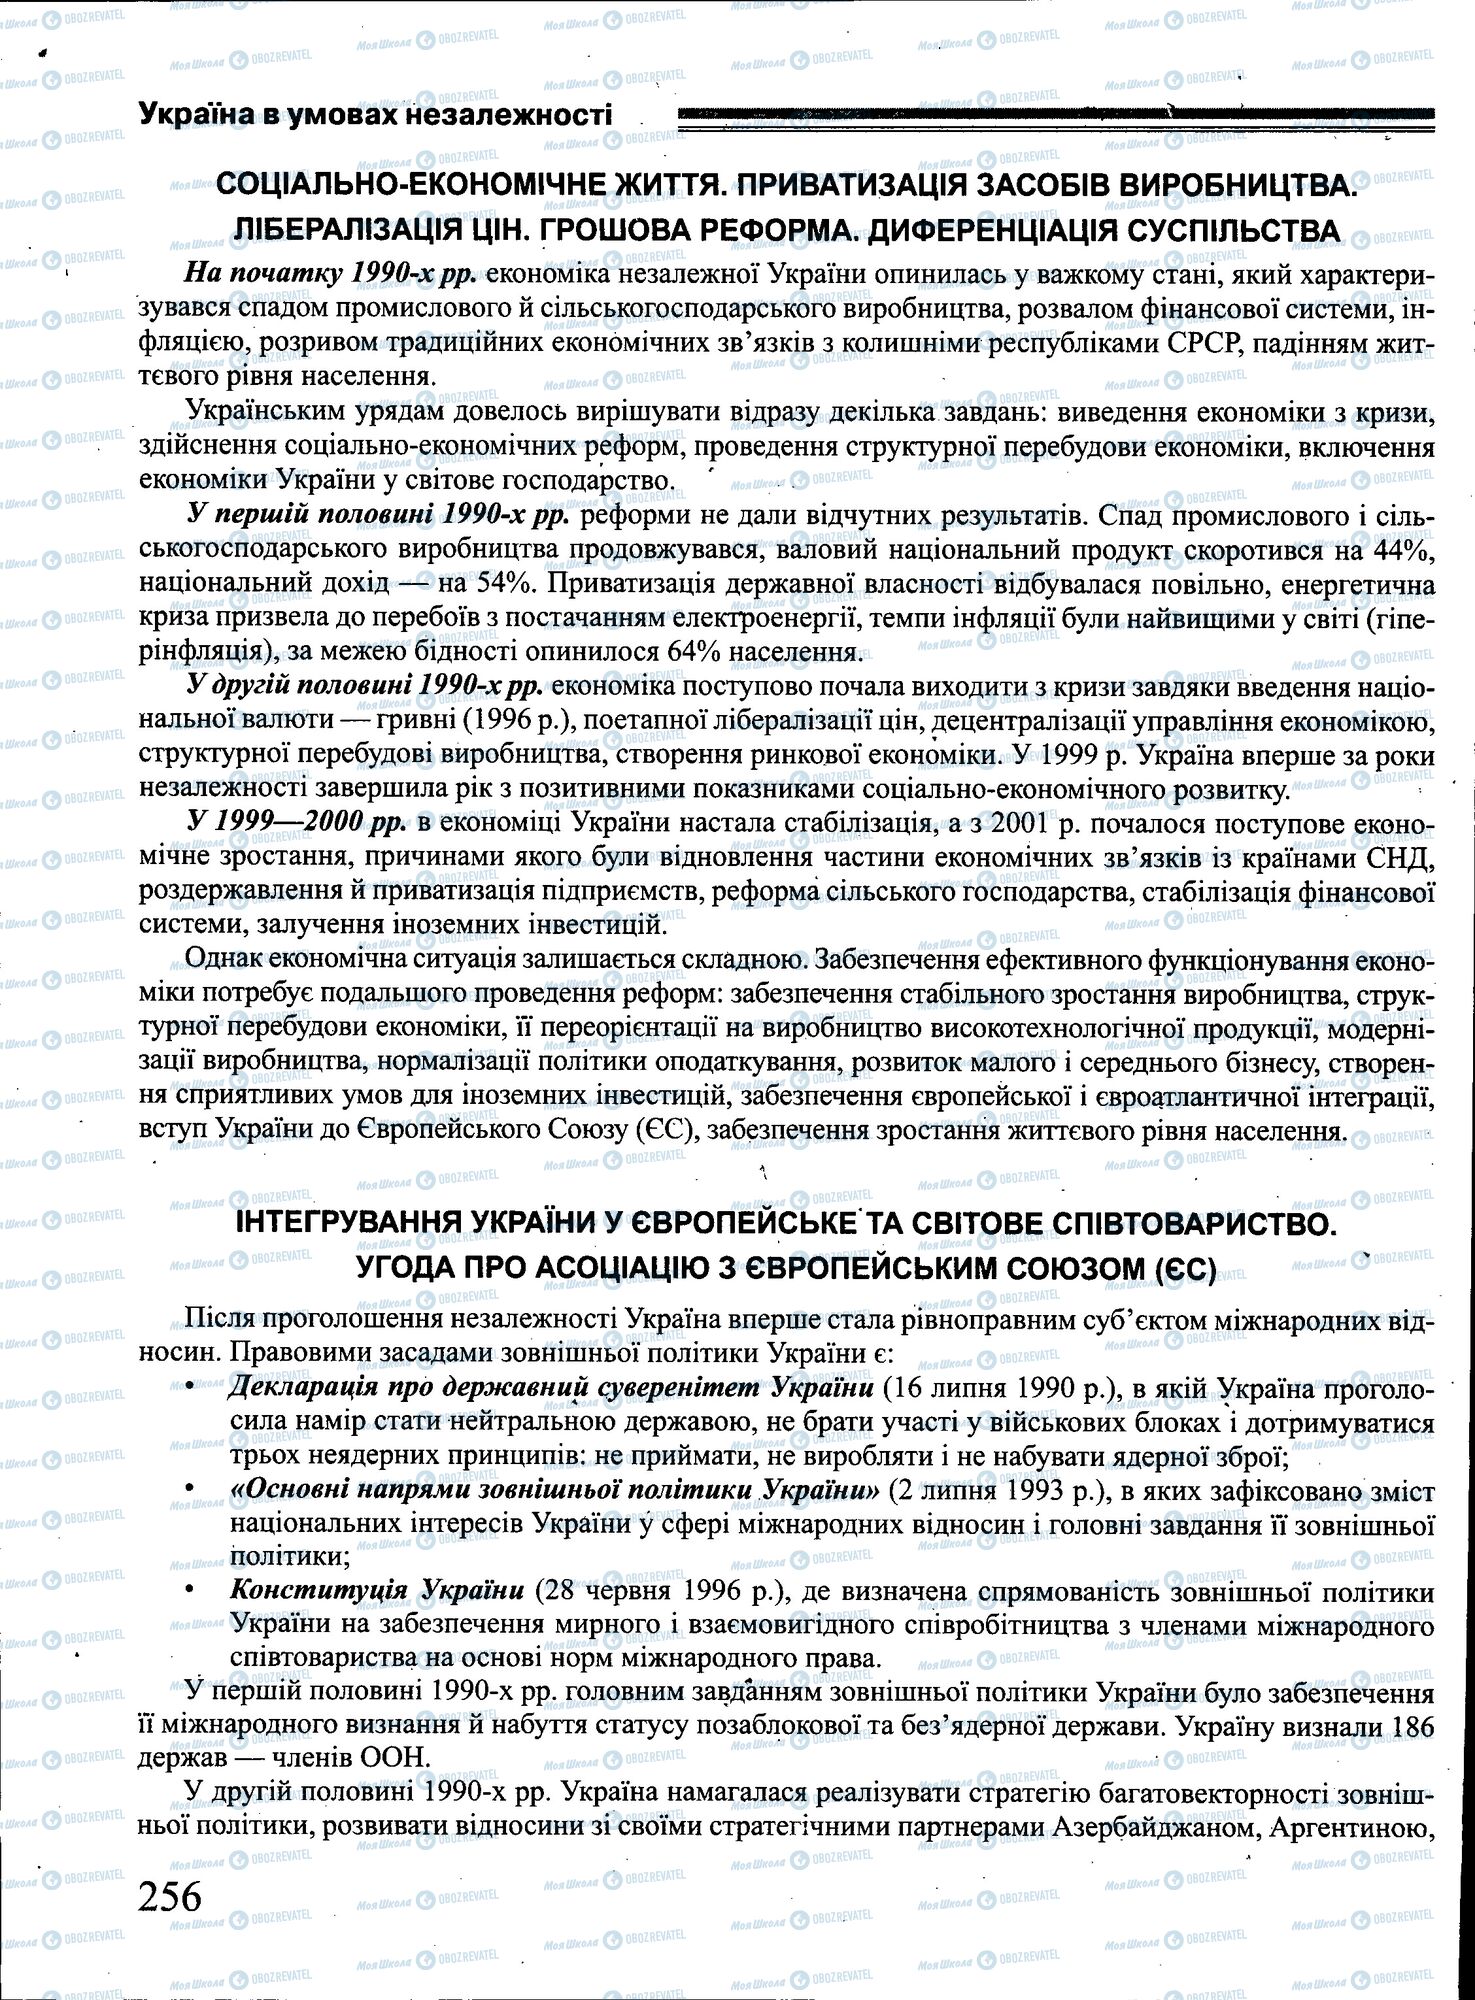 ЗНО История Украины 11 класс страница 256